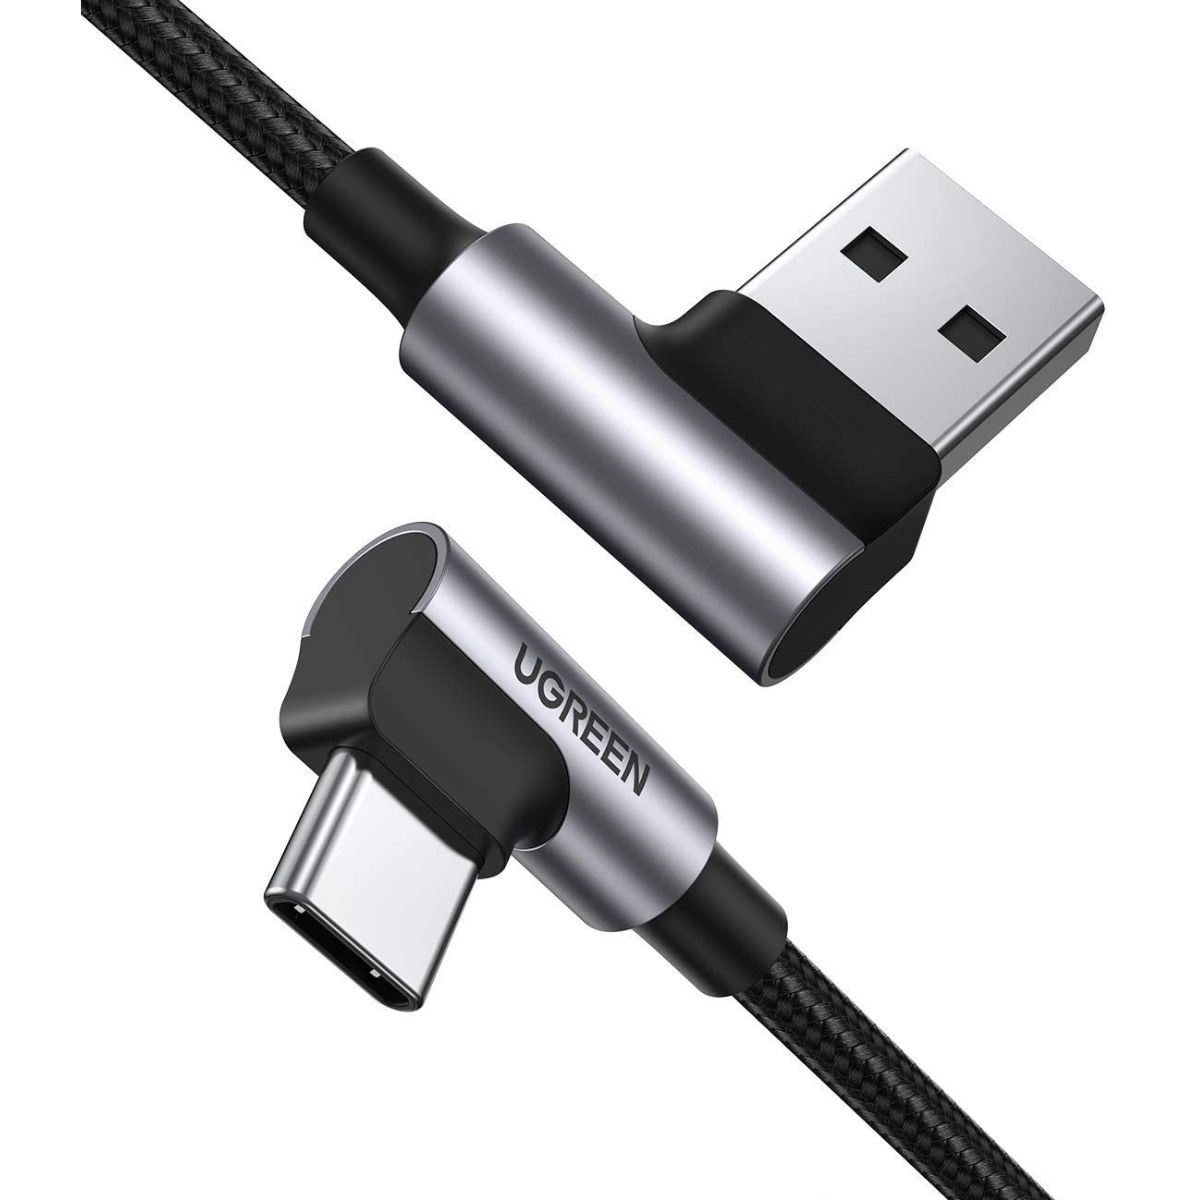 Cáp sạc nhanh USB 2.0 sang USB type C Ugreen US176, 20855 chiều dài 50cm, màu đen, vỏ nhôm mạ niken